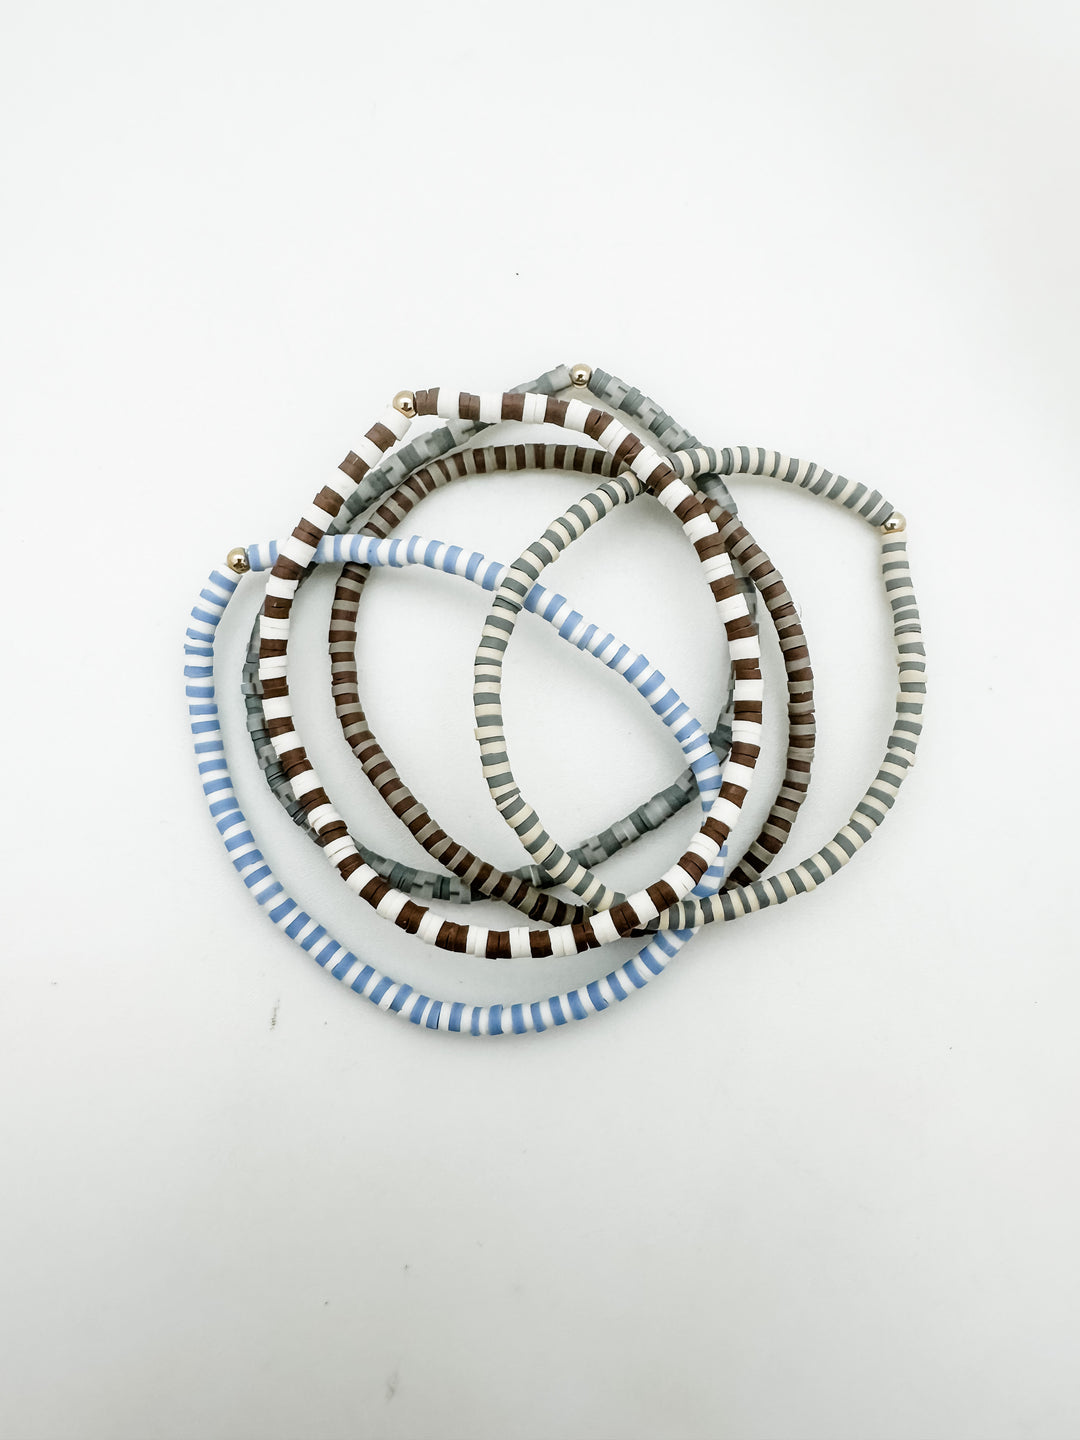 Vinyl Stack Bracelets